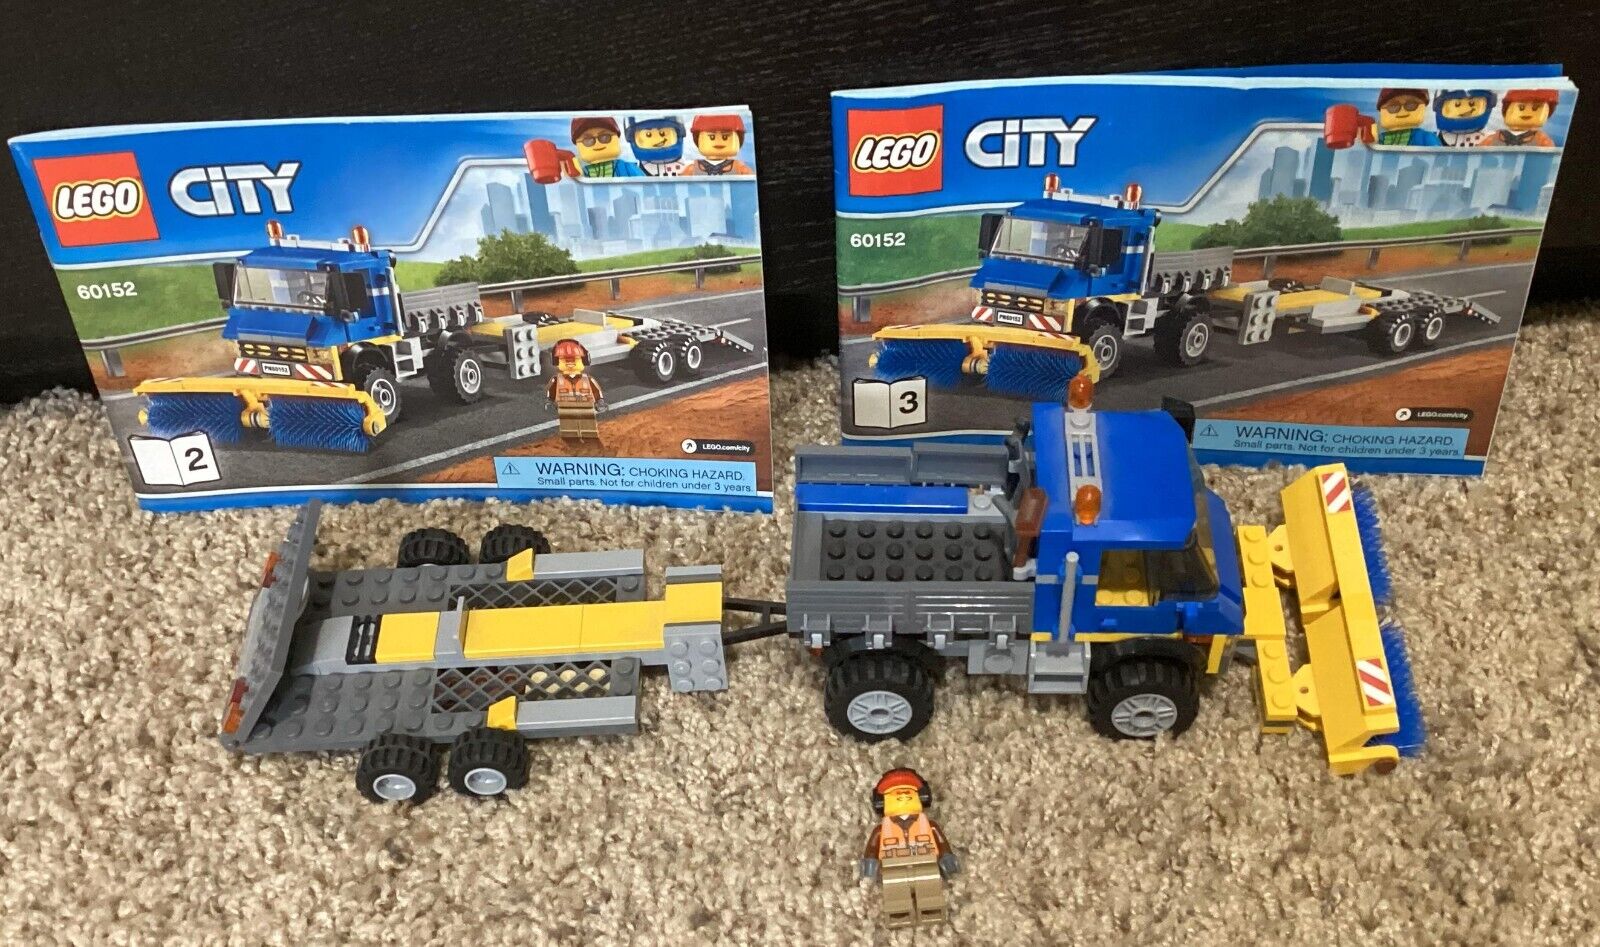 LEGO CITY: Sweeper & Excavator (60152), missing excavator, no box.